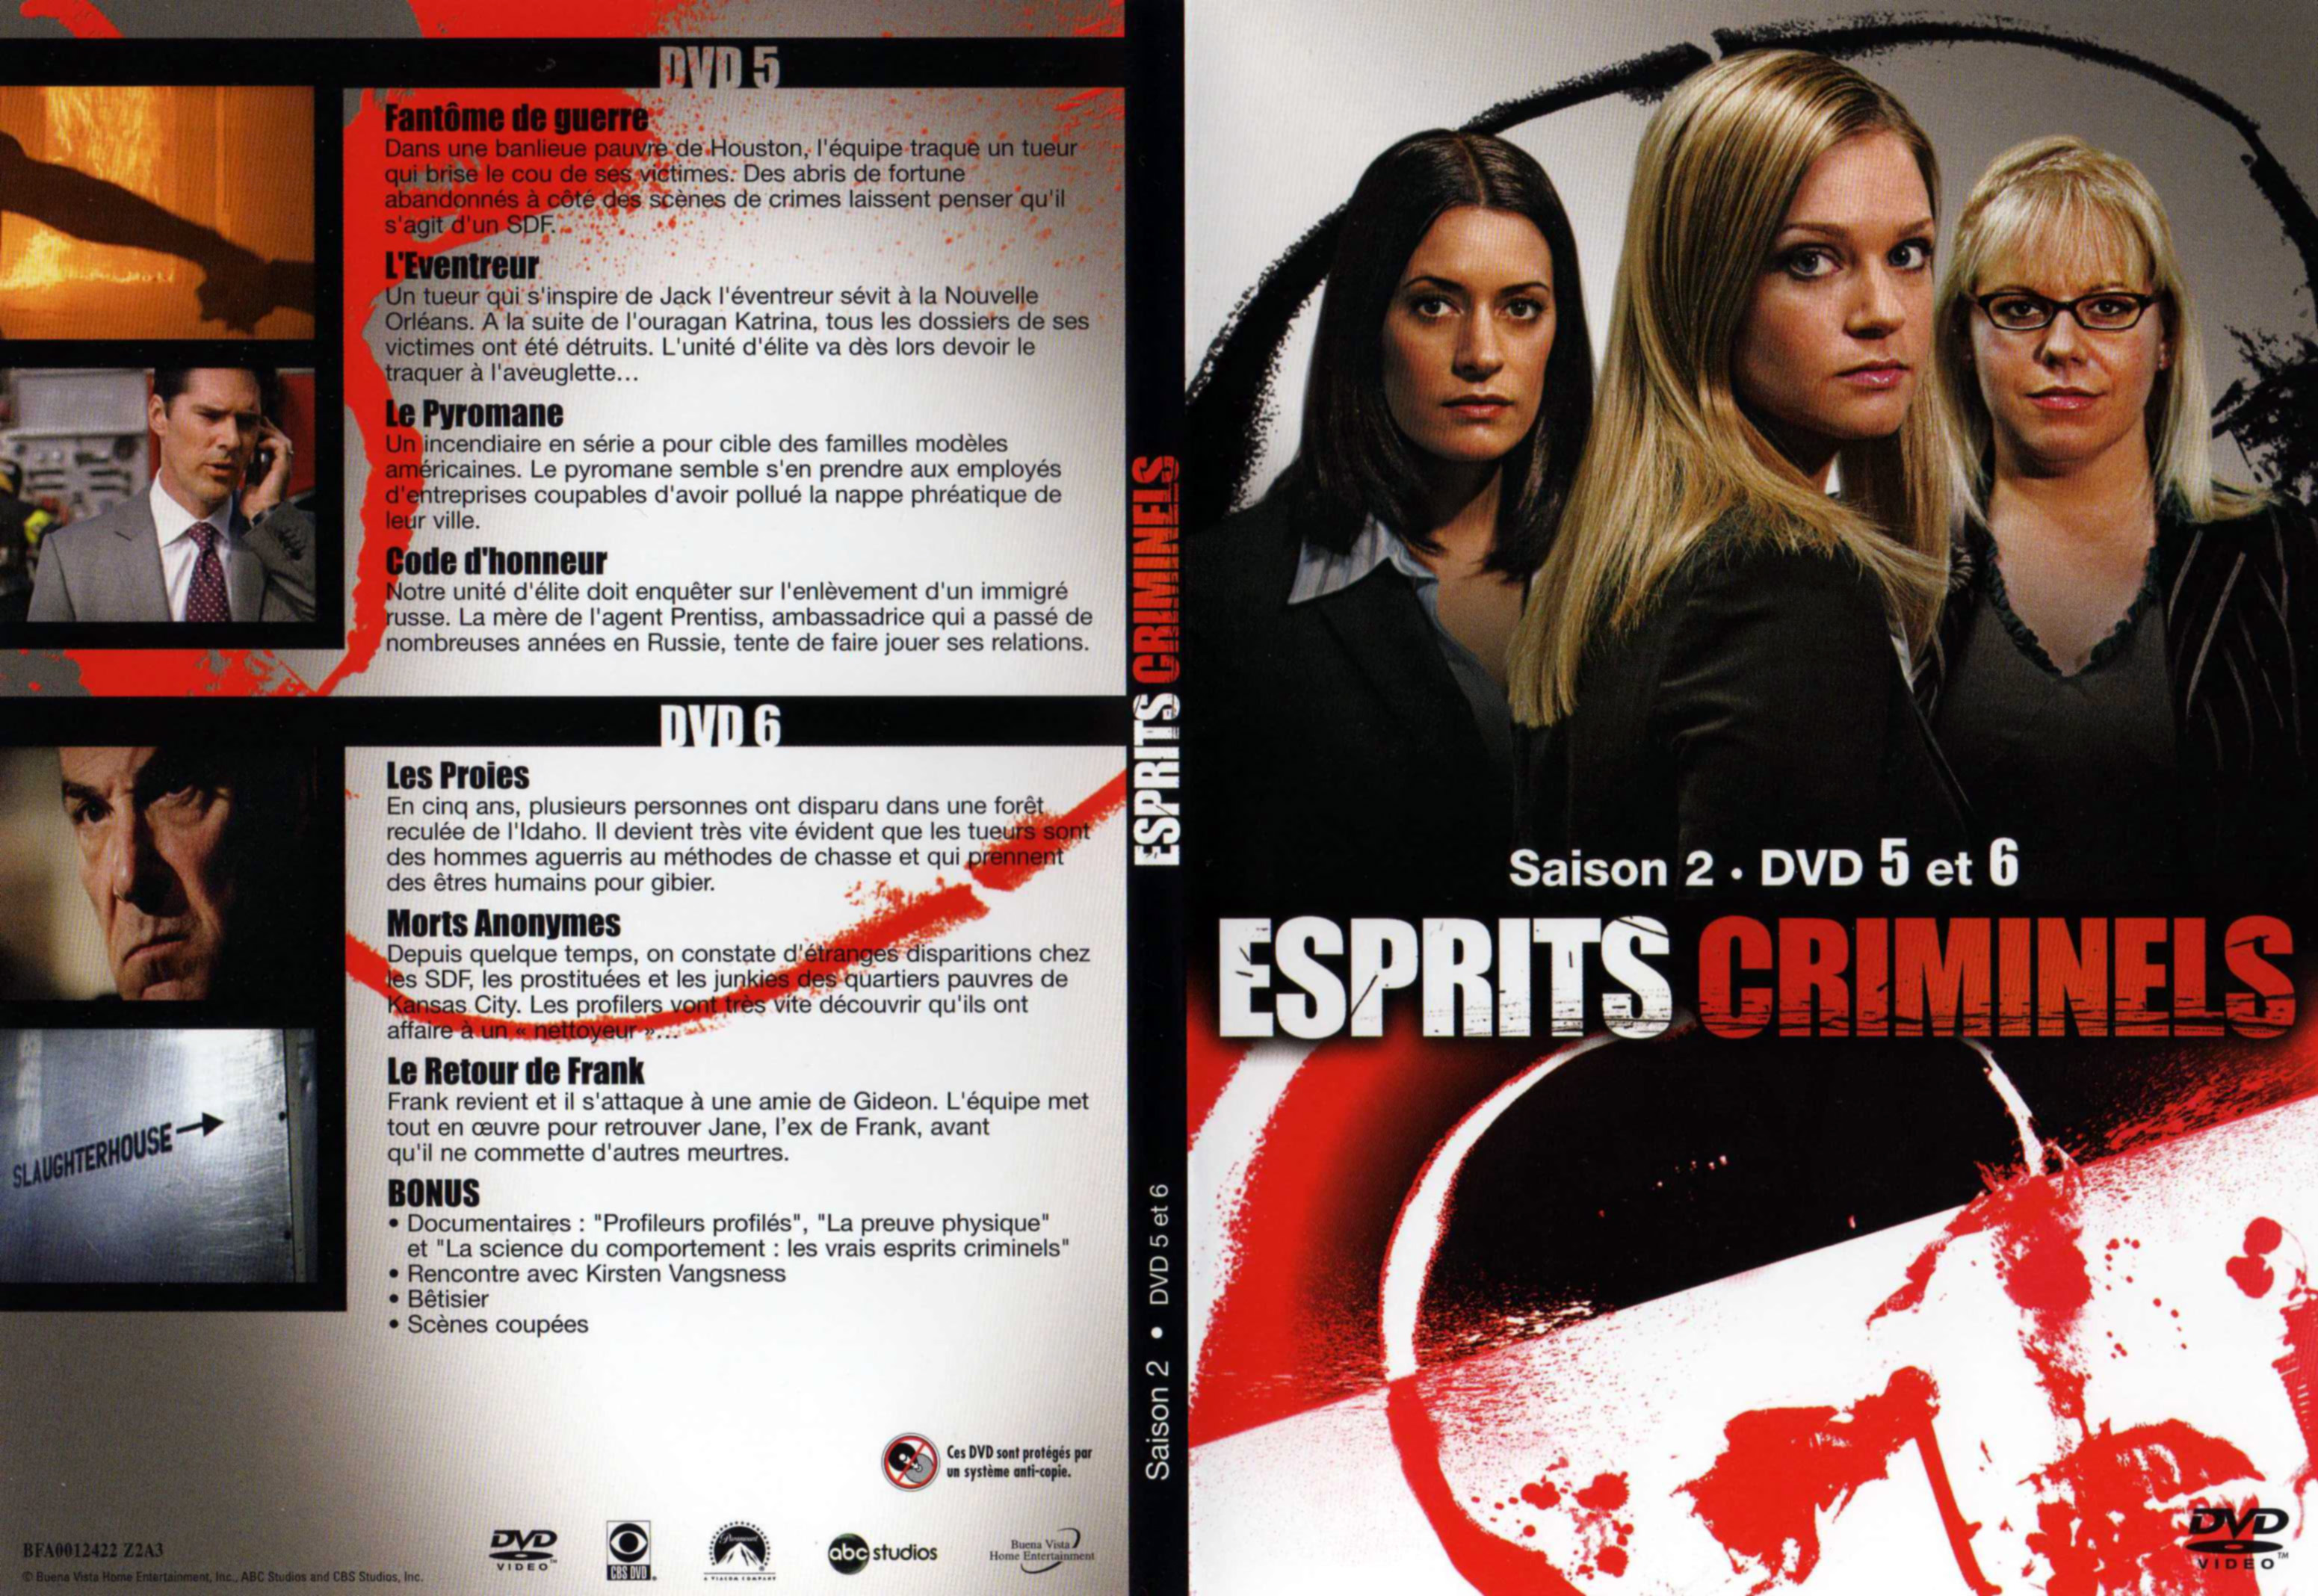 Jaquette DVD Esprits criminels Saison 2 DVD 3